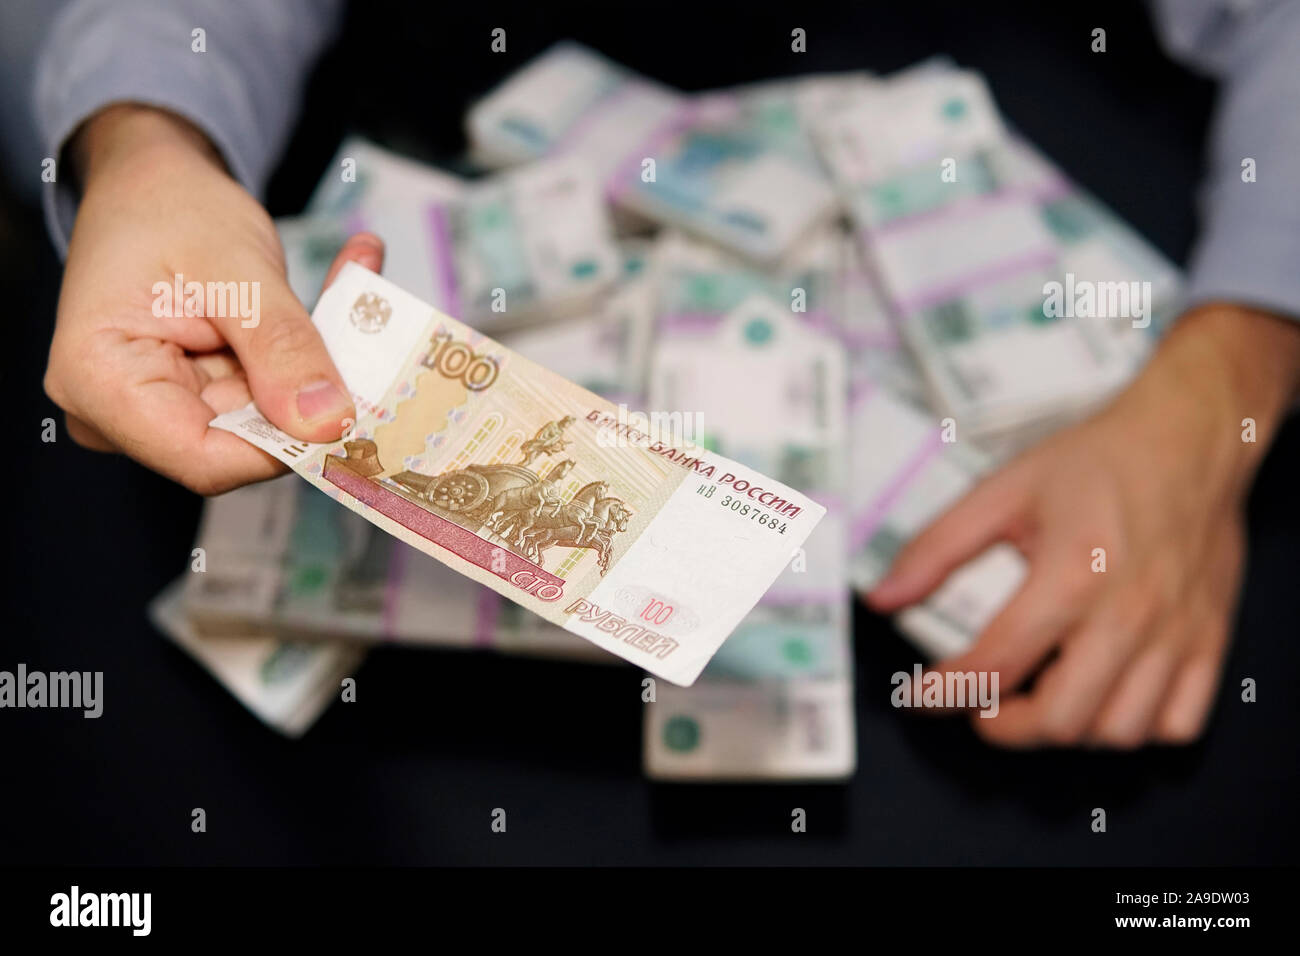 Les mains des hommes cupides pour atteindre une liasse d'argent. Un million de roubles sur le tableau noir. Le concept de la richesse, le succès, la cupidité et la corruption, la luxure f Banque D'Images